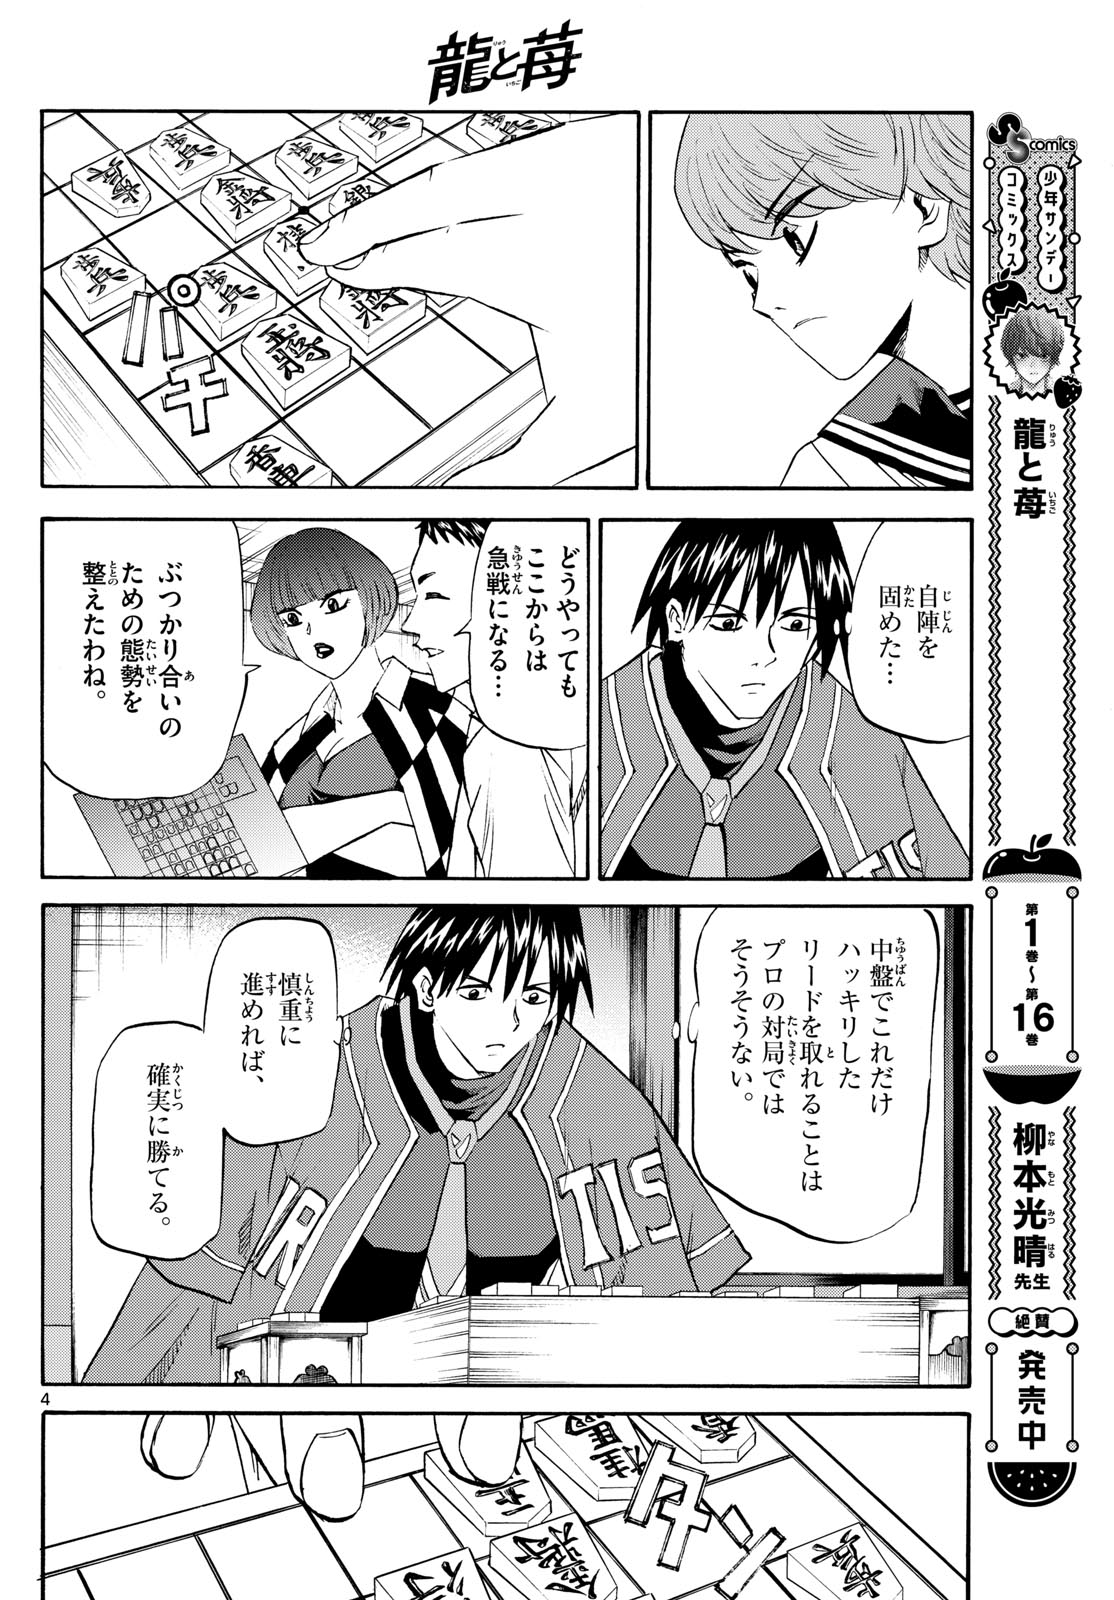 Tatsu to Ichigo - Chapter 198 - Page 4